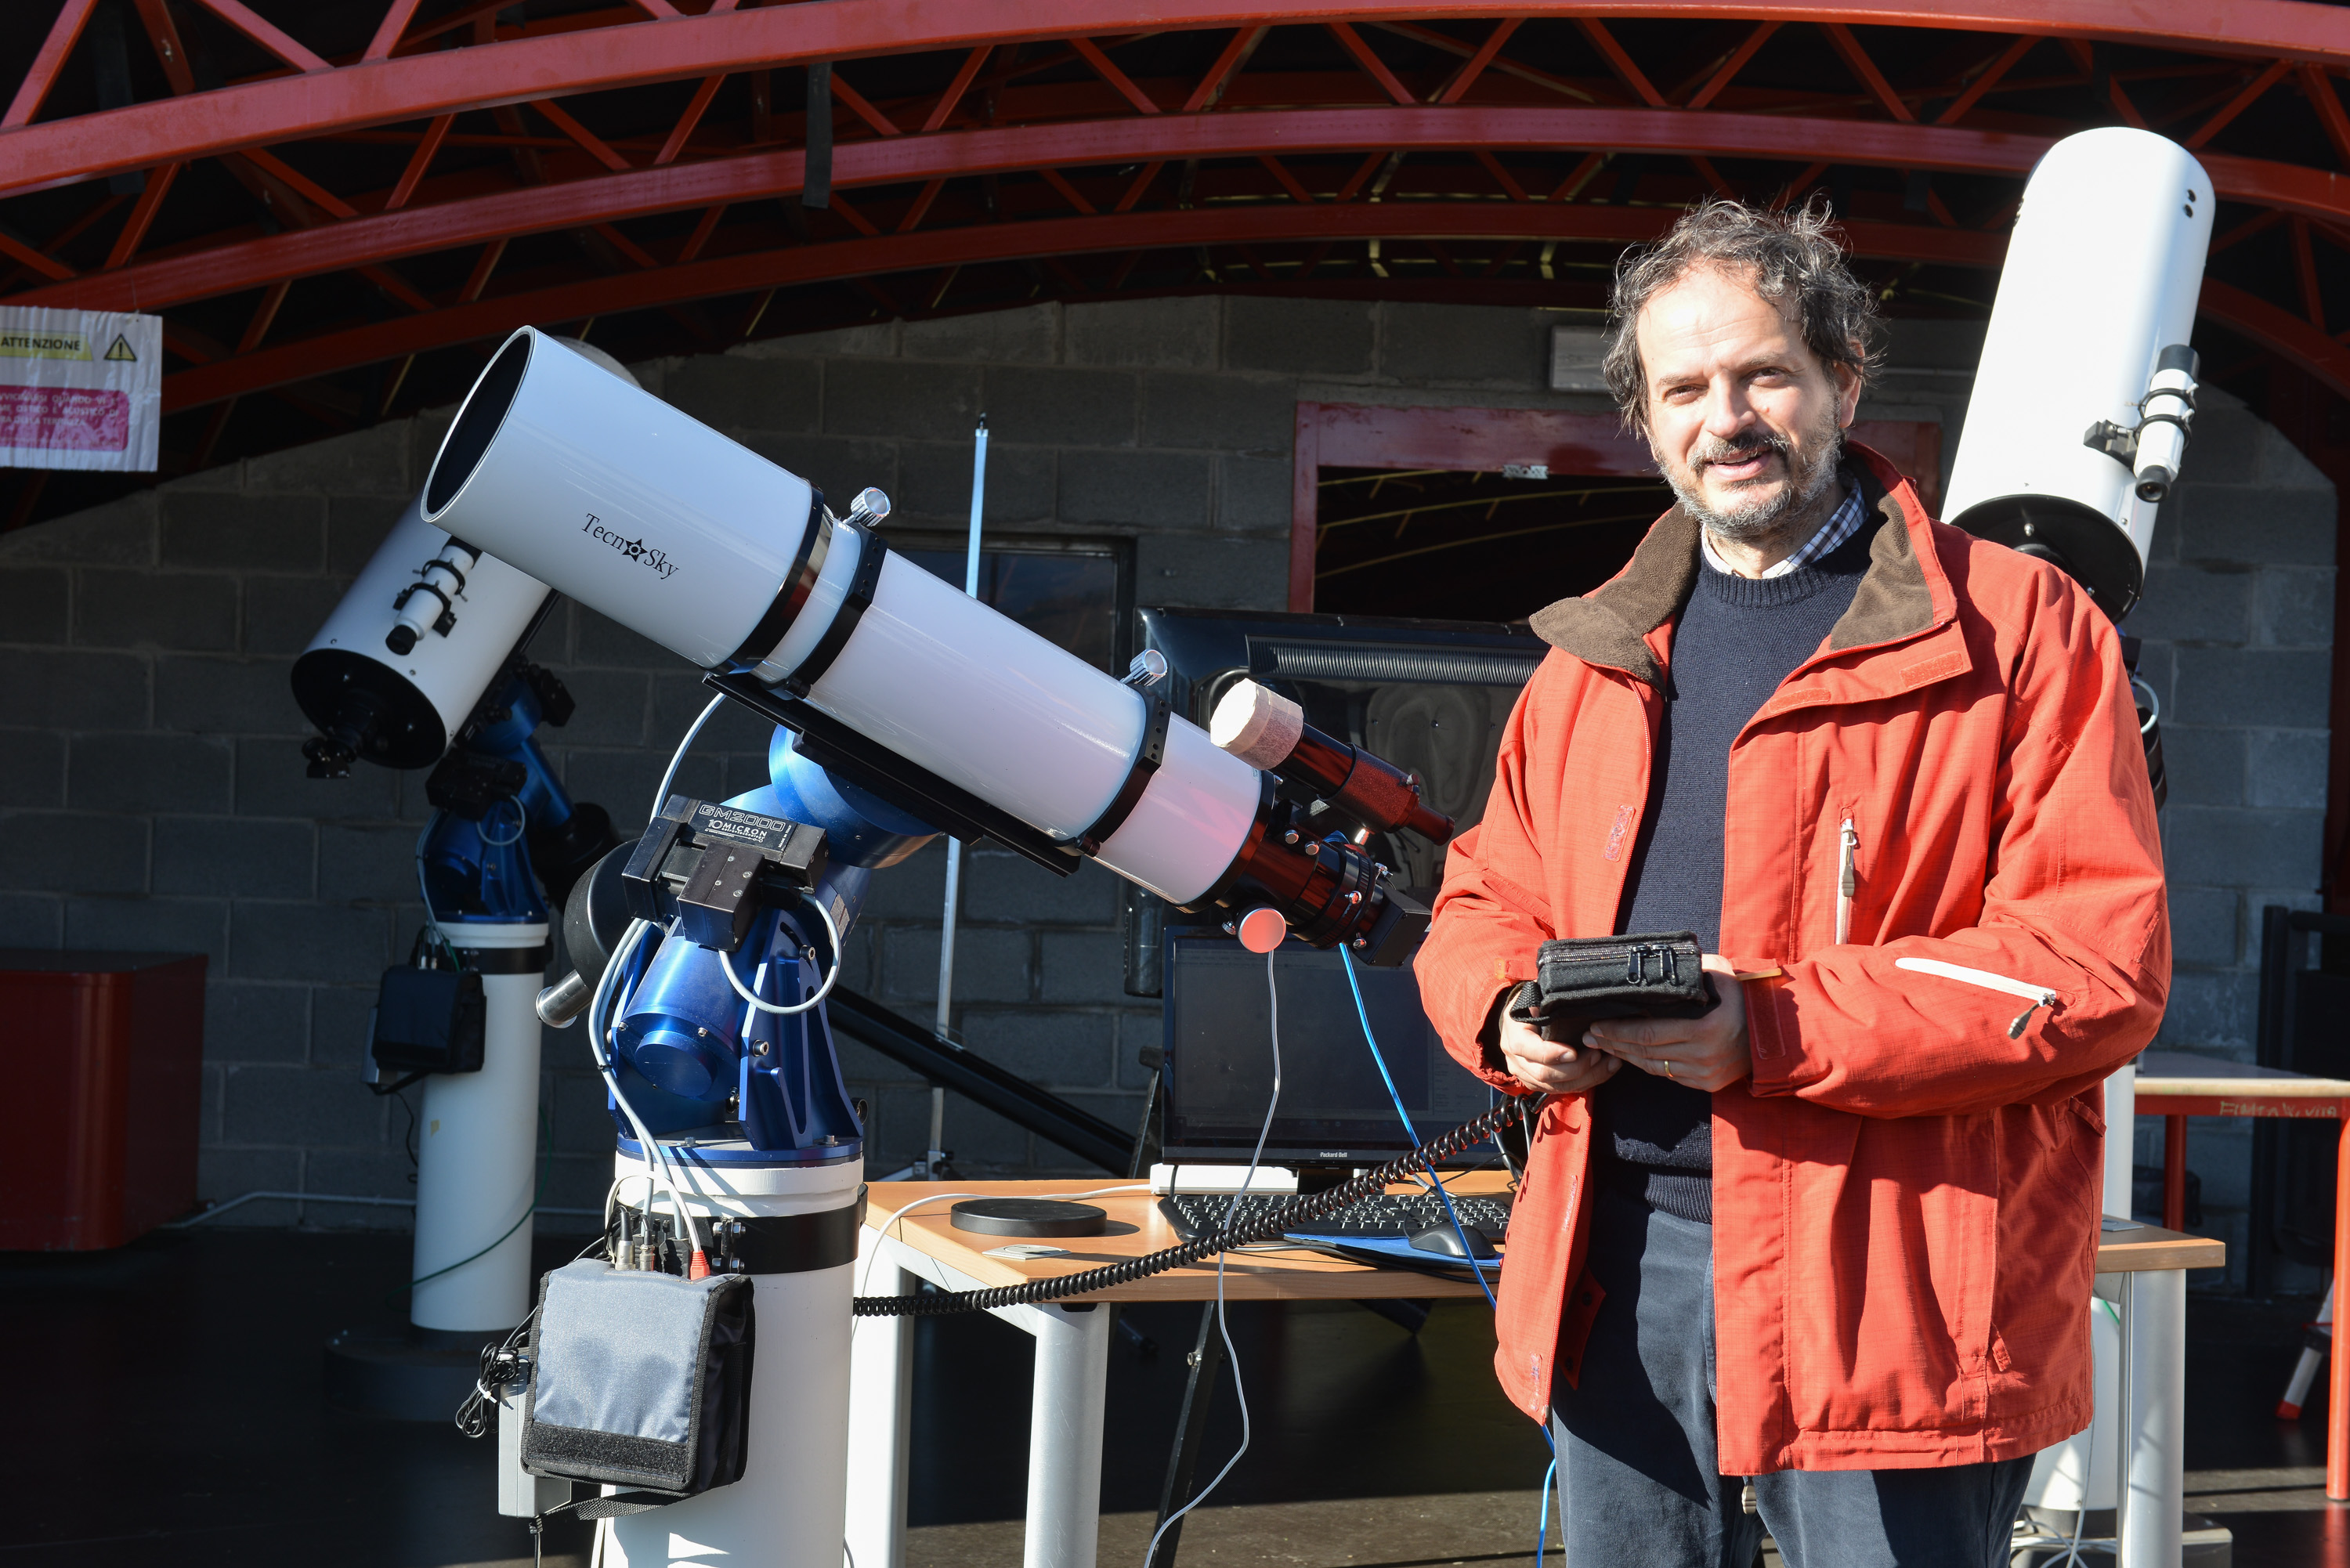 Il telescopio rifrattore acromatico da 152 mm di apertura f/5,9. Foto di Paolo Rey (Archivio Regione autonoma Valle d'Aosta) #valledaostaeuropa